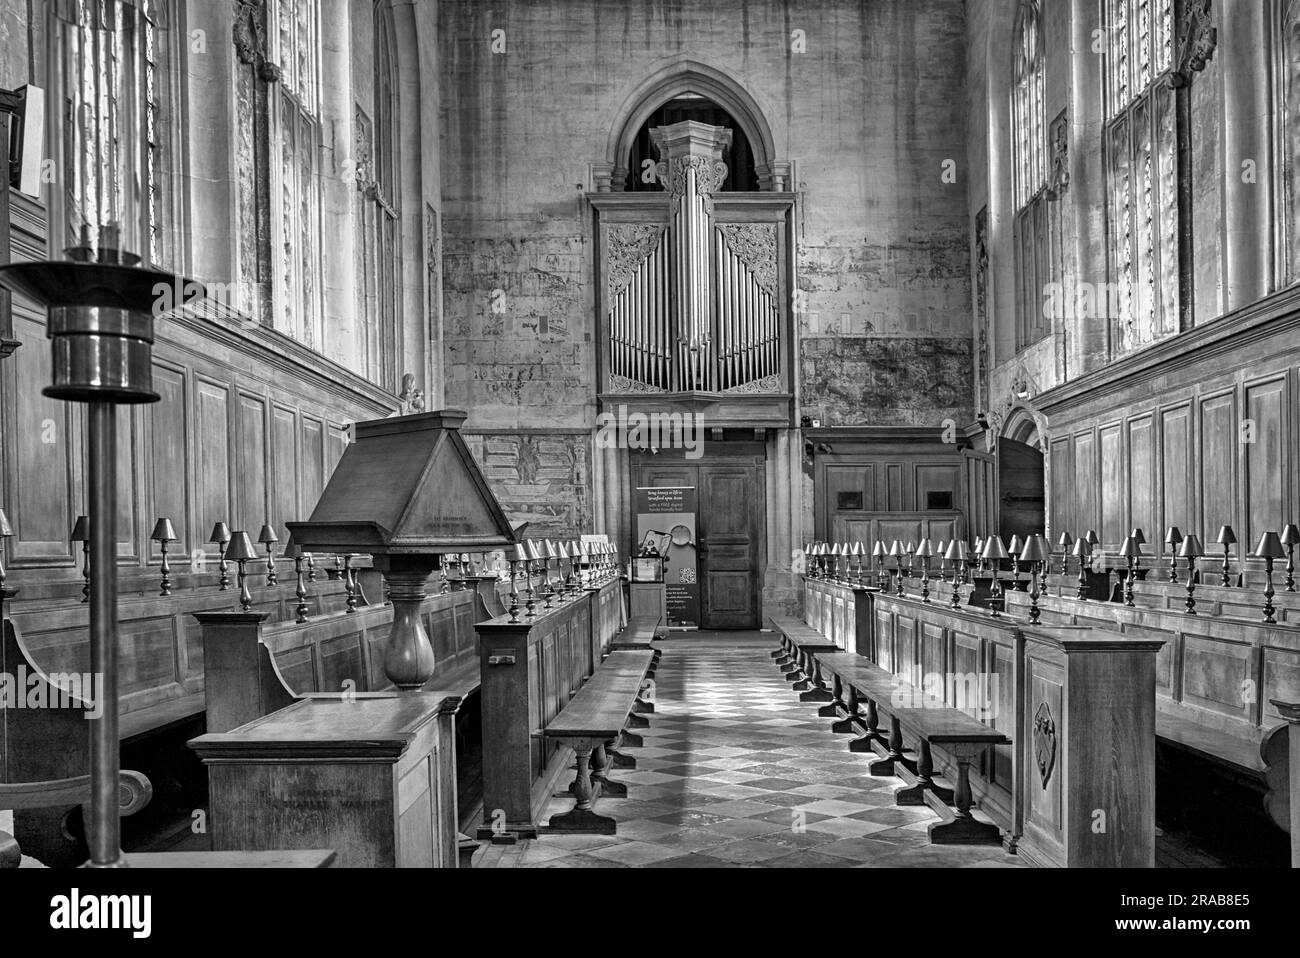 Innenraum der Guild Chapel, Stratford-upon-Avon, England, Großbritannien. Schwarzweißfotografie, Stockfoto